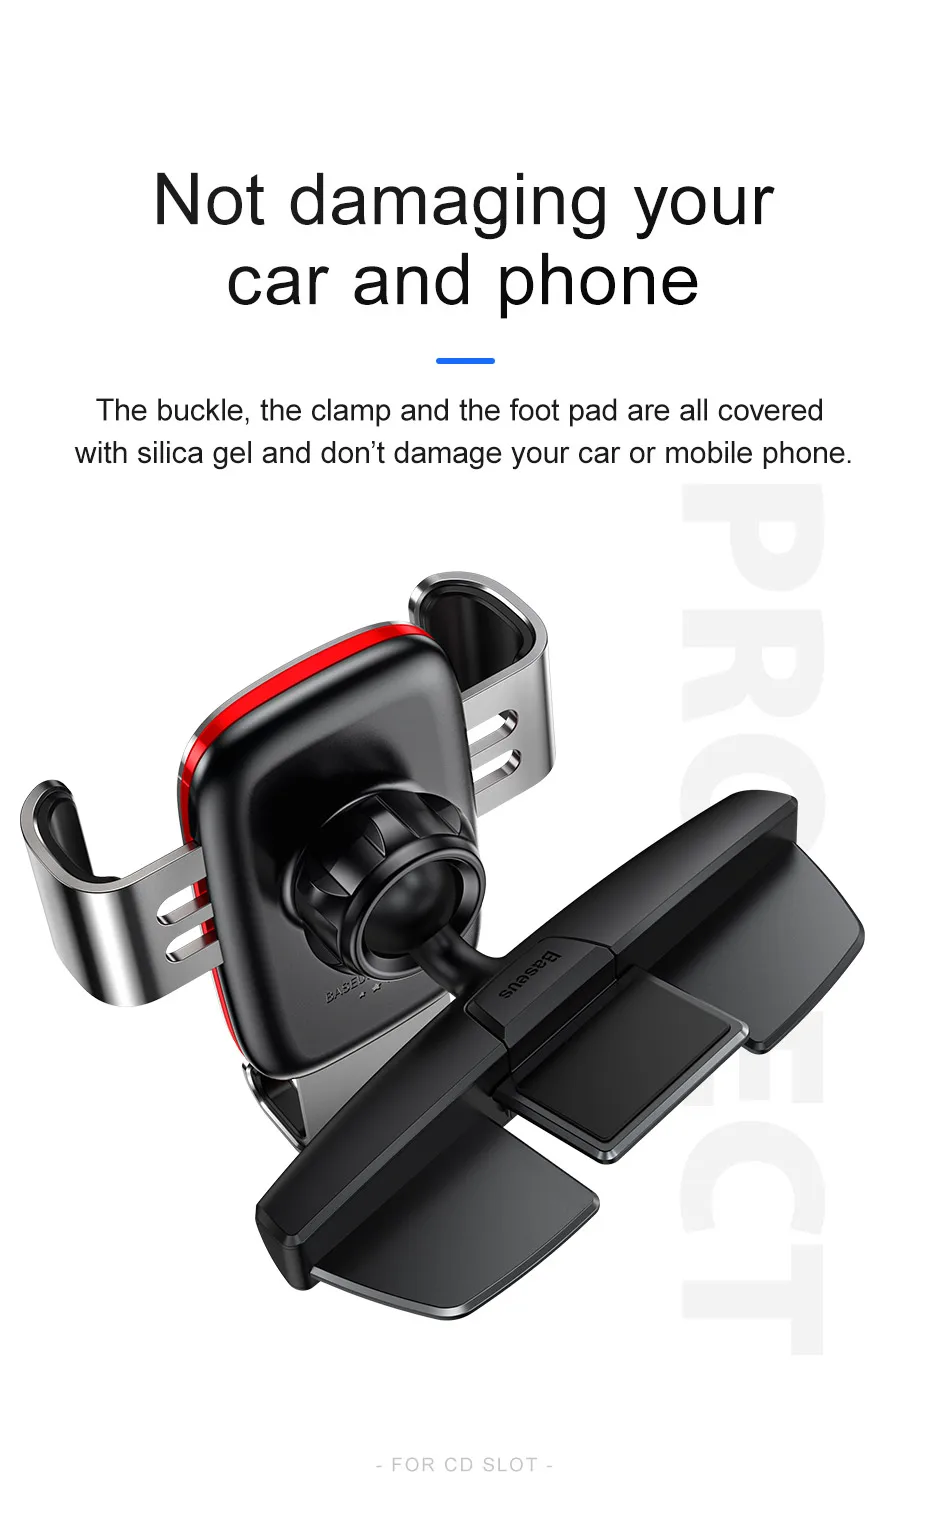 Baseus CD слот Автомобильный держатель для телефона гравитационный Автомобильный держатель для телефона в машину для iPhone samsung Xiaomi мобильный сотовый телефон автомобильный стенд